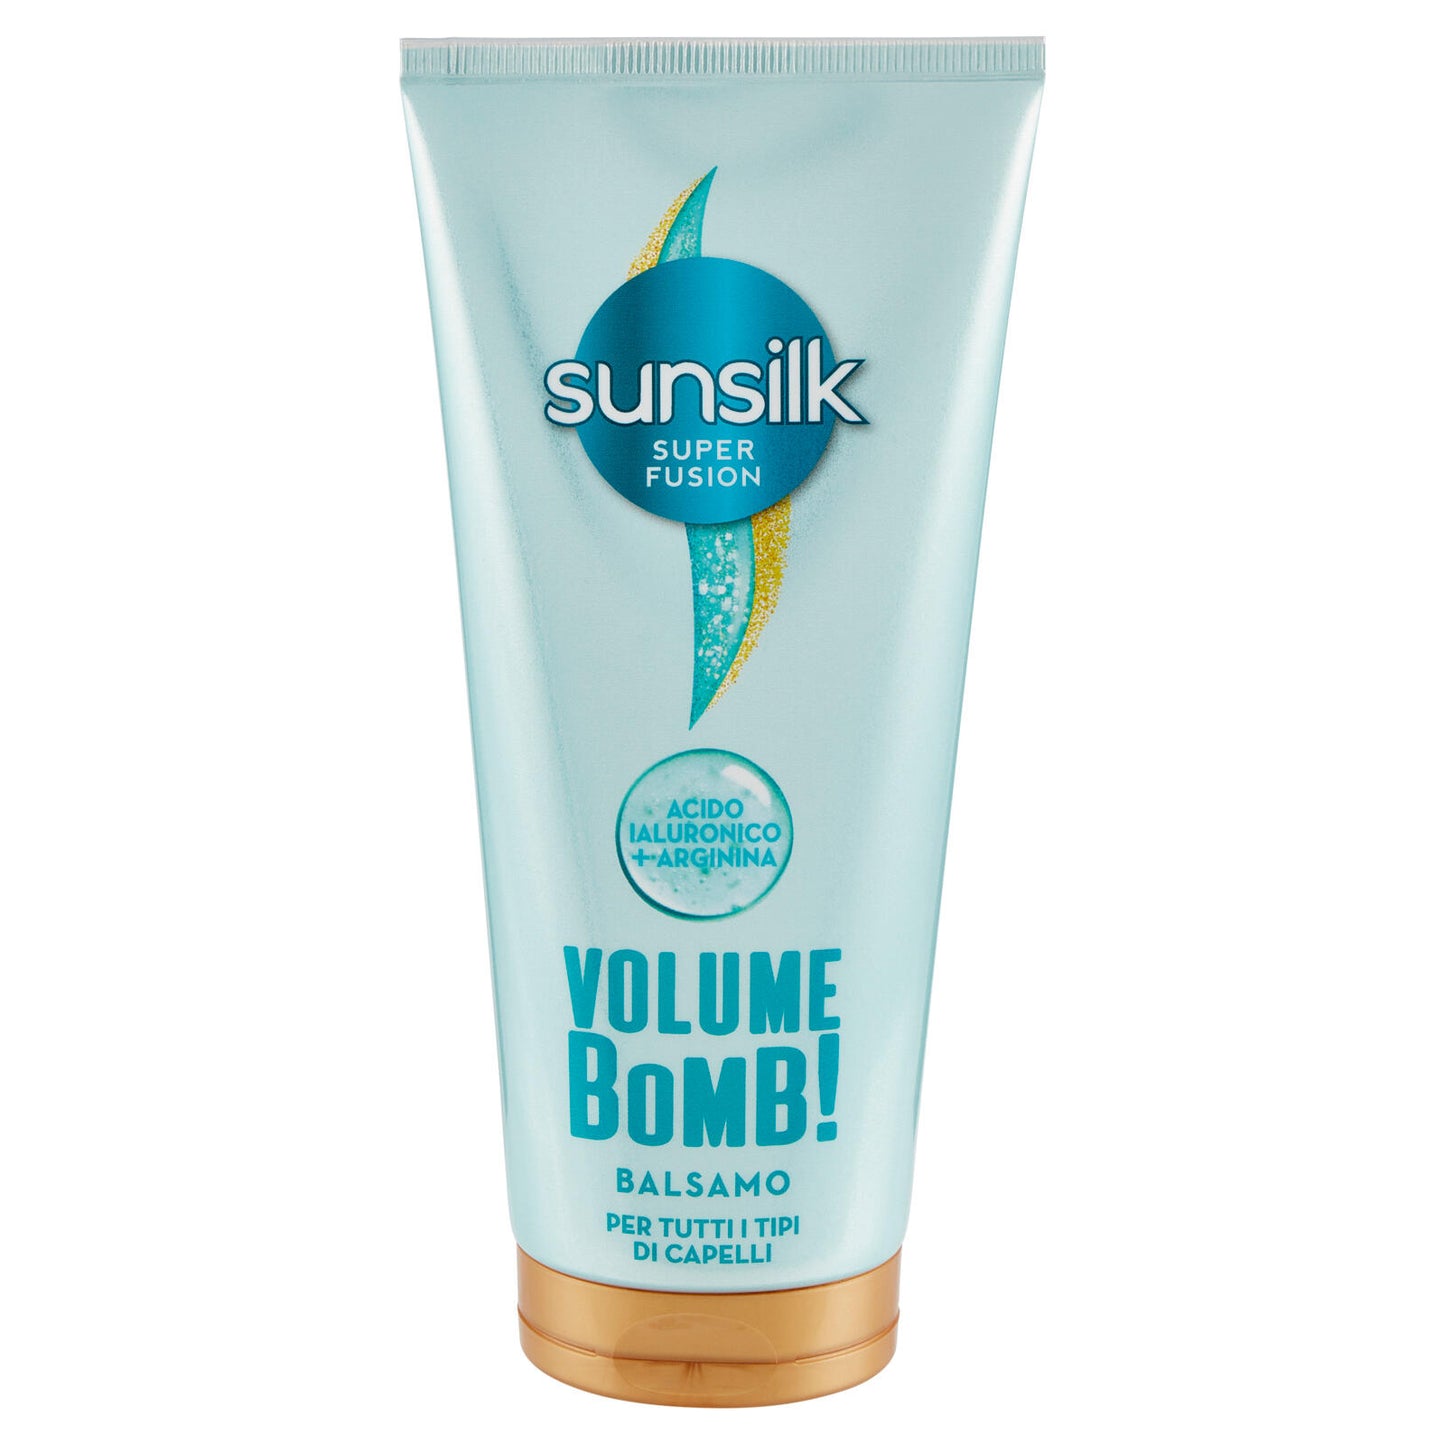 sunsilk Super Fusion Volume Bomb! Balsamo per Tutti i Tipi di Capelli 180 ml